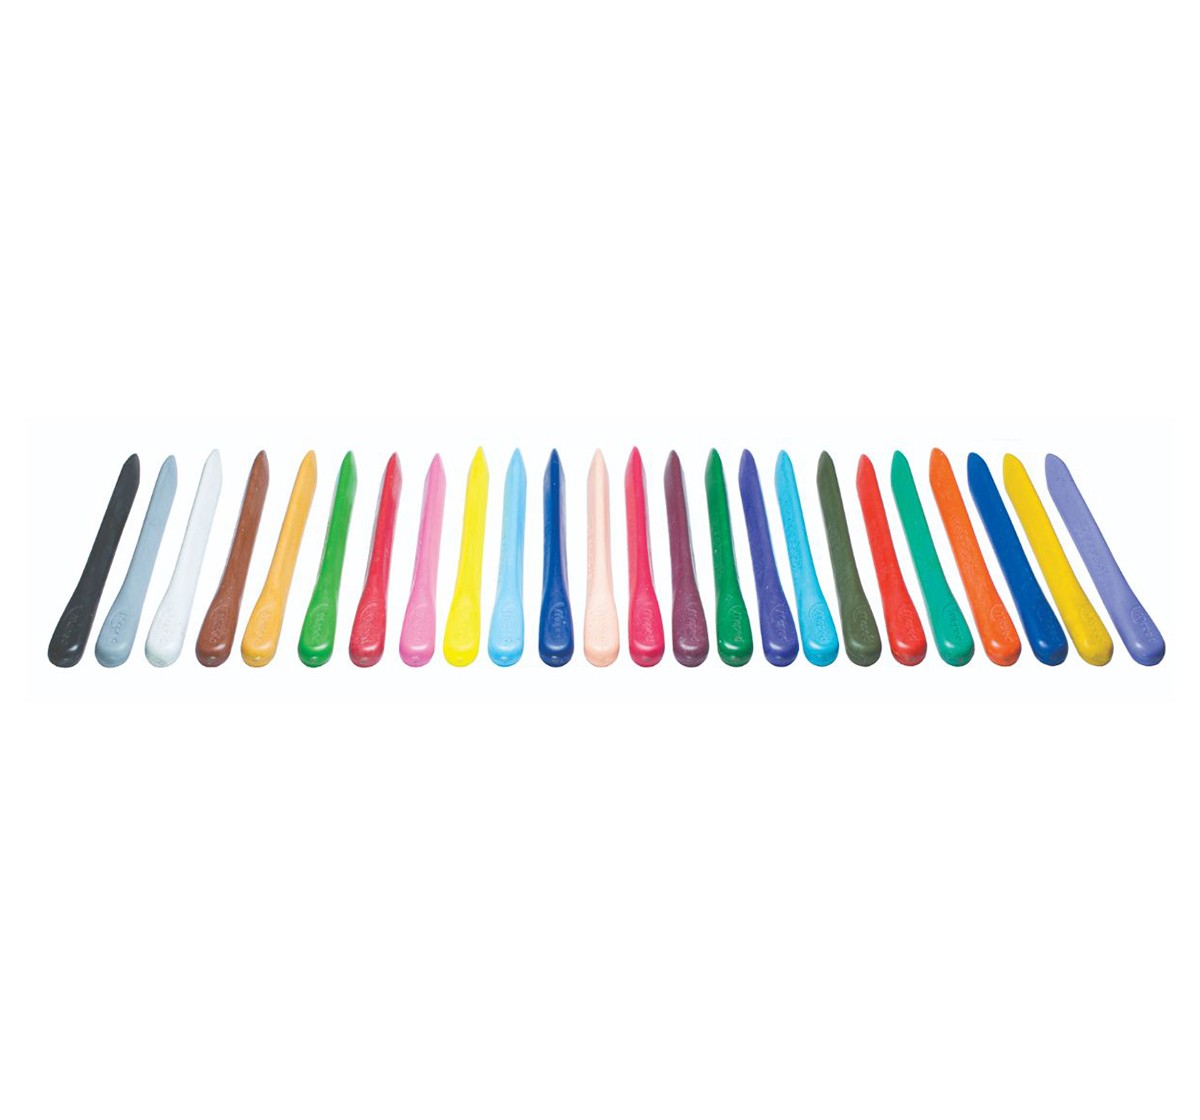 Maped Plastic Crayon - 24 Shades, 7Y+ (Multicolour)